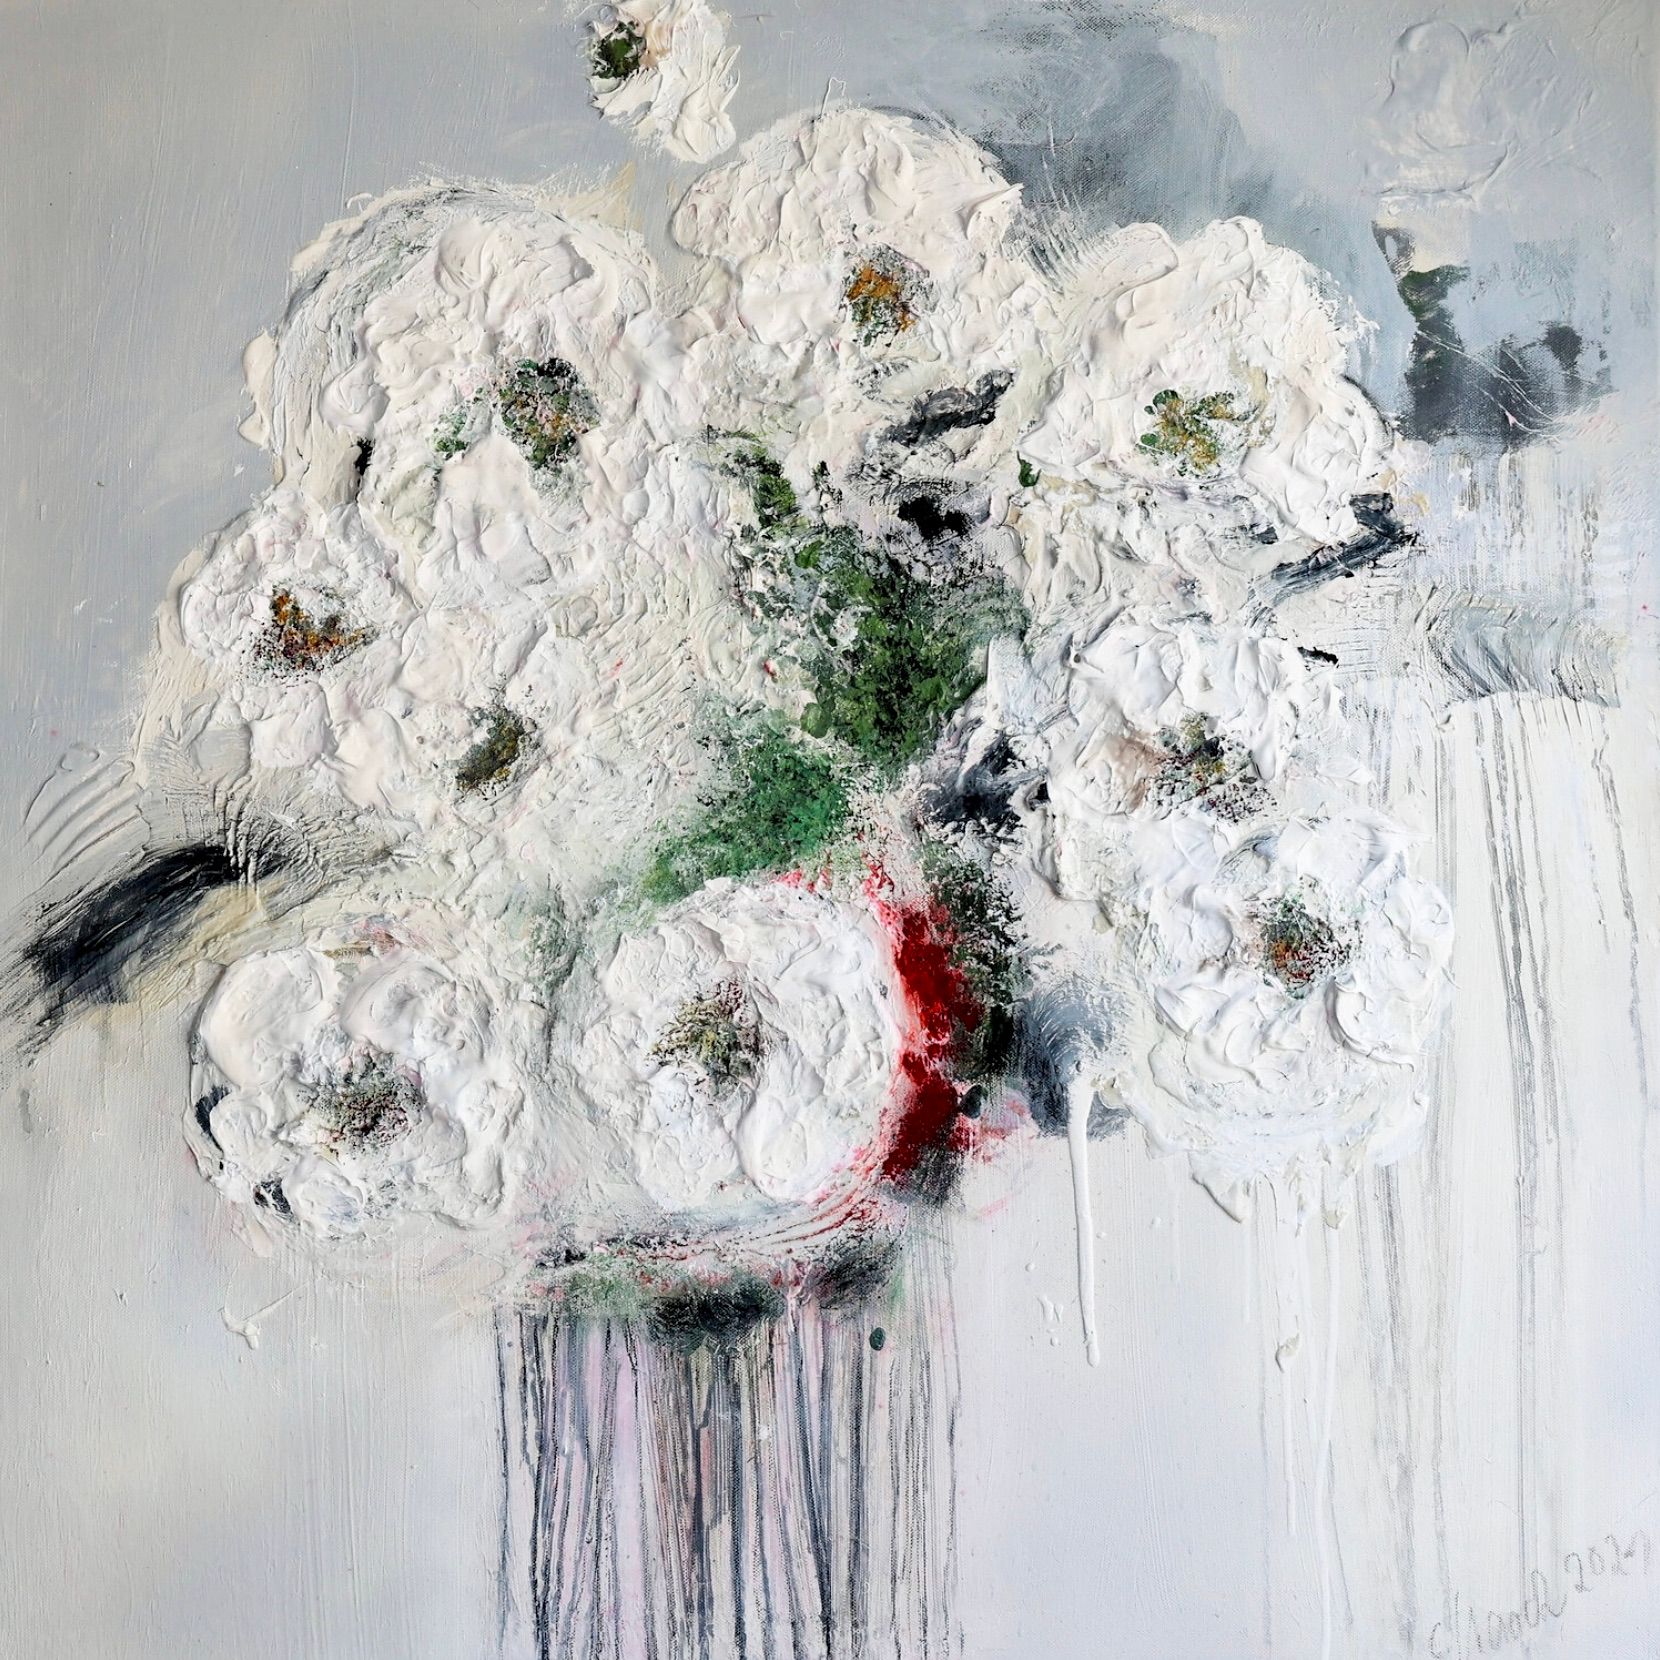 Nel dipinto floreale astratto espressionista "Im Rausch der Blumen 3" di Christa Haack dominano i colori bianco, beige, verde e rosso.